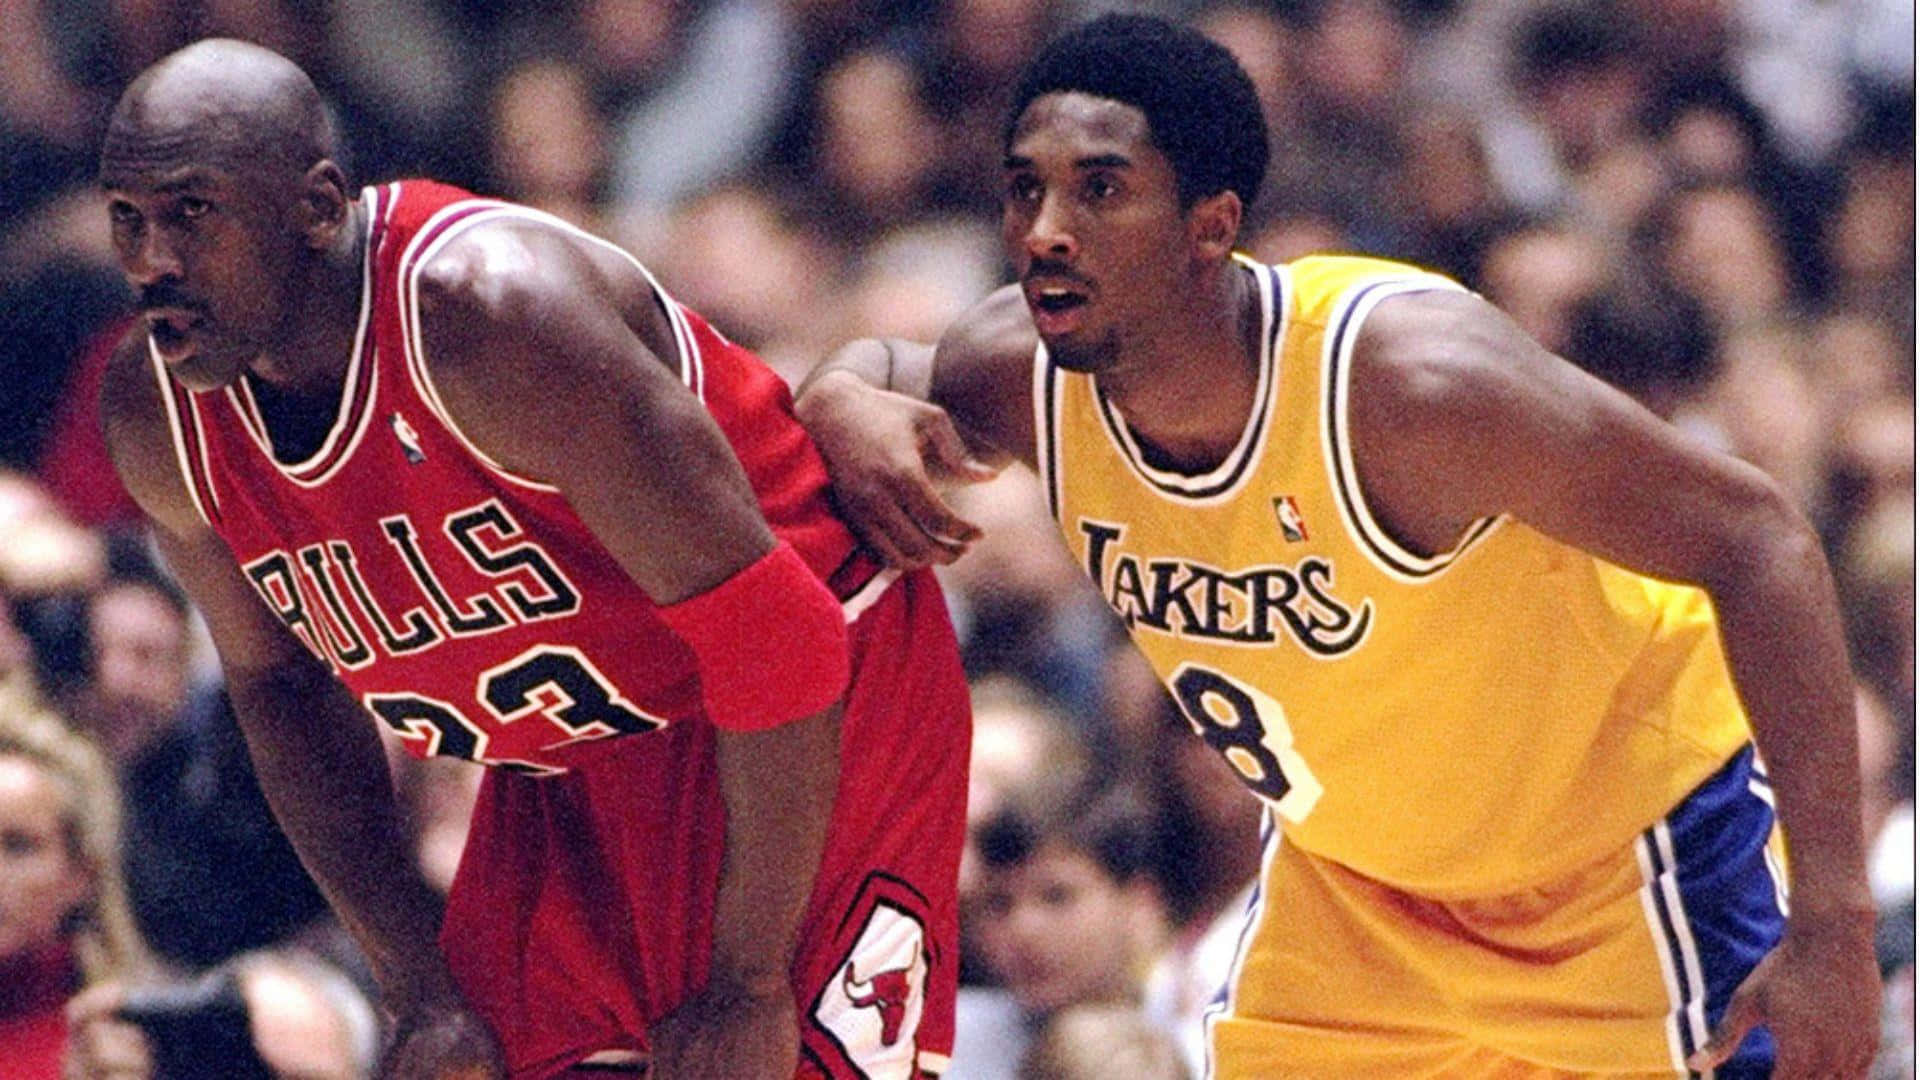 Dosleyendas Del Baloncesto, Kobe Bryant Y Michael Jordan, Abrazándose En Una Muestra De Mutuo Respeto. Fondo de pantalla